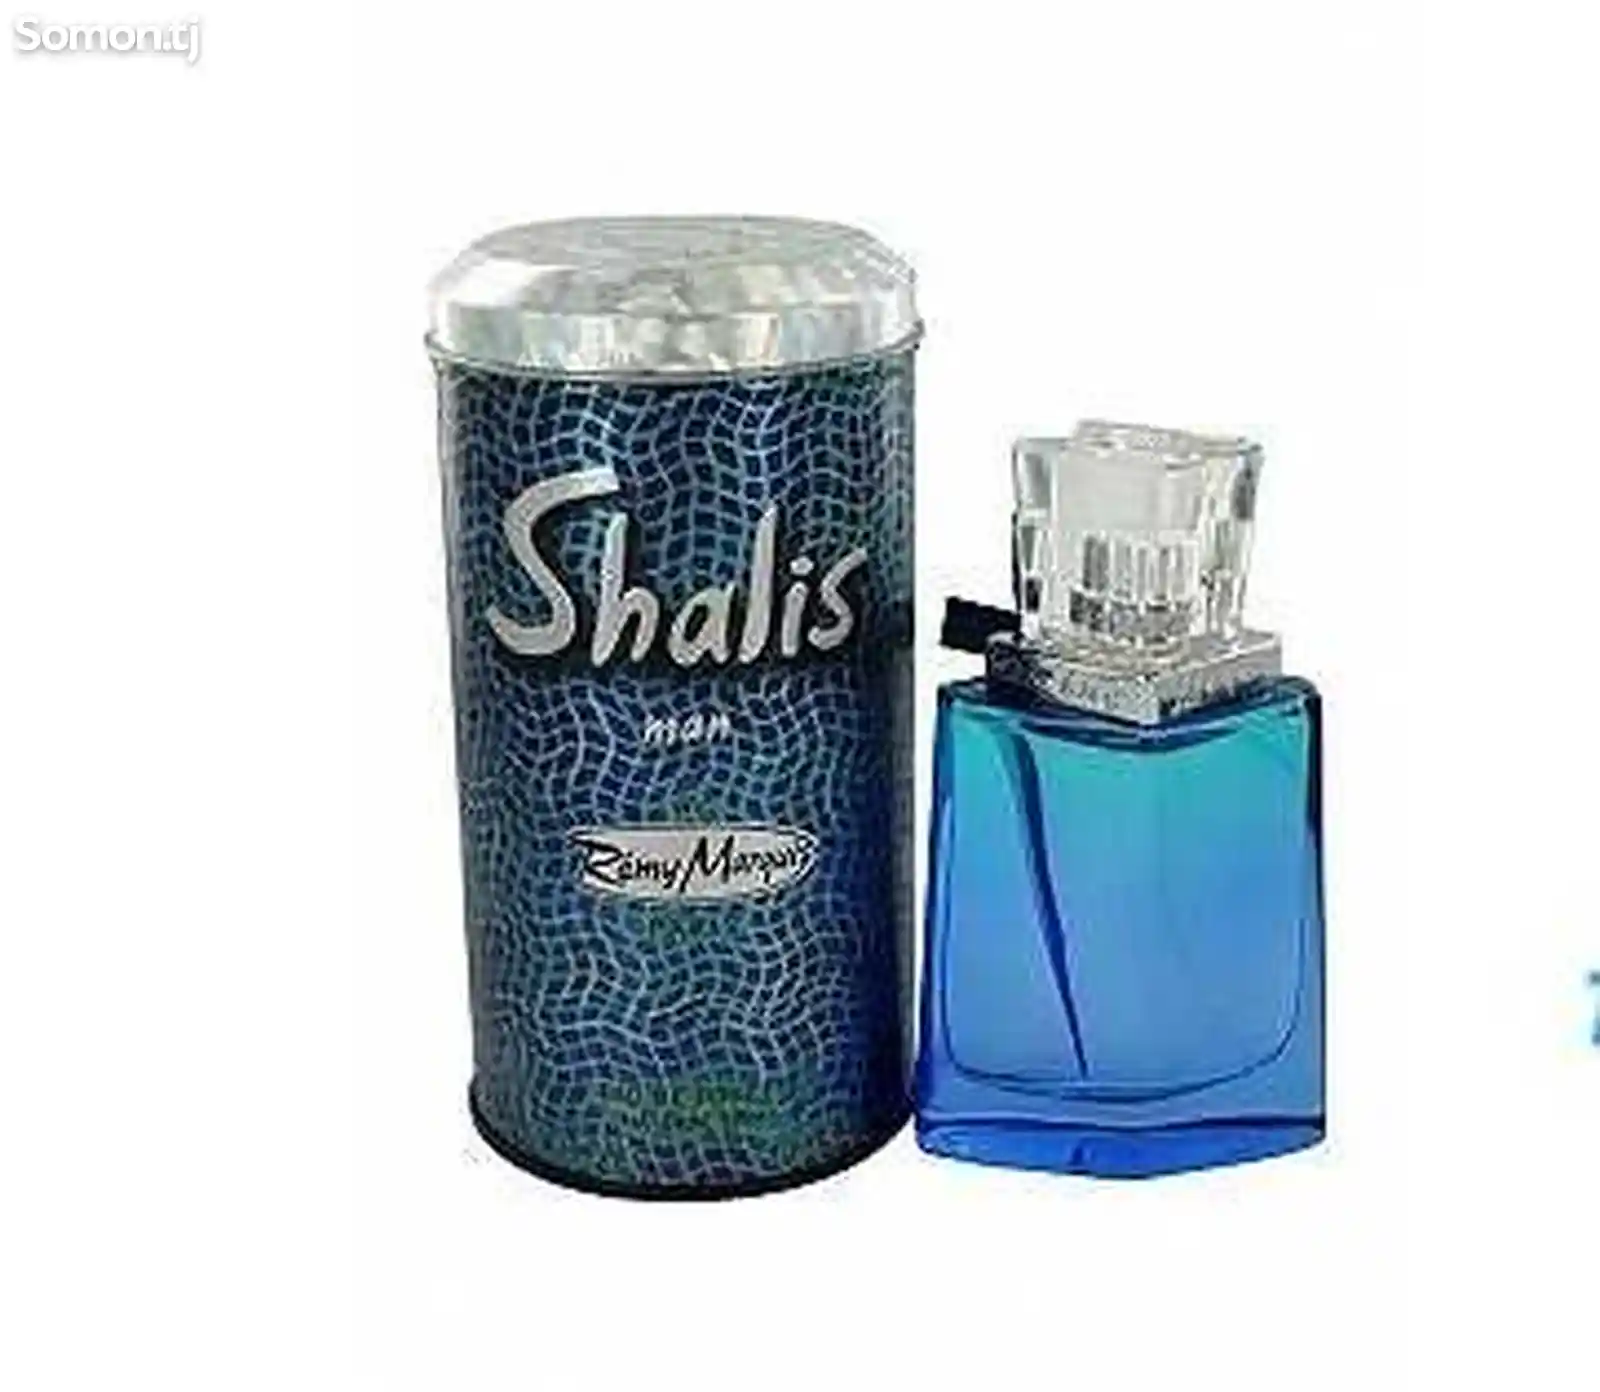 Parfum Shalis man-1